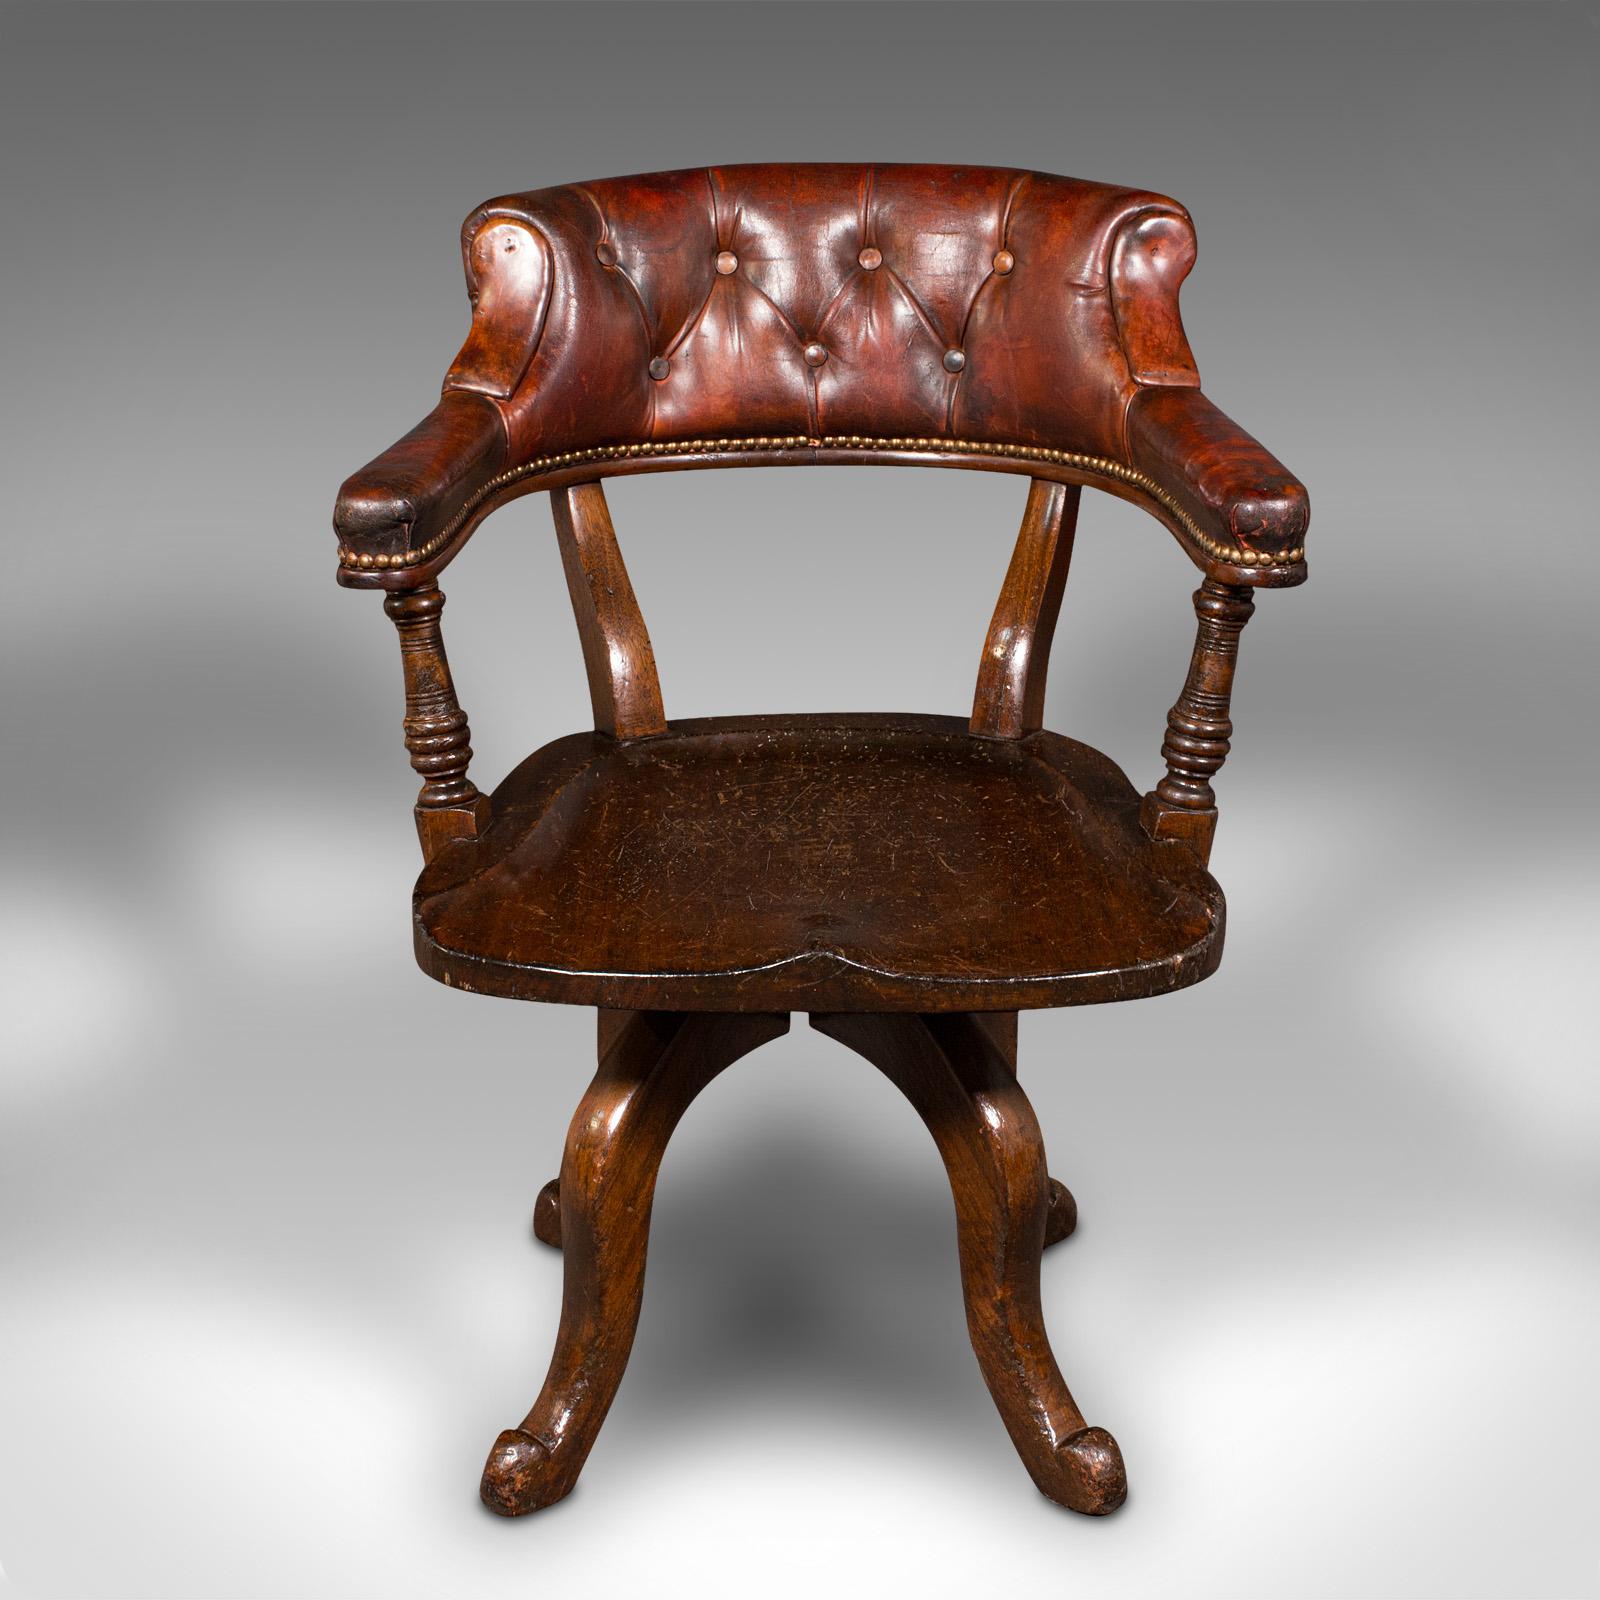 Il s'agit d'une ancienne chaise de porteur. Siège de bureau rotatif anglais en acajou et cuir, datant de la période victorienne, vers 1880.

Superbe couleur et aspect gracieux de cette chaise polyvalente.
Présente une patine d'usage désirable et est